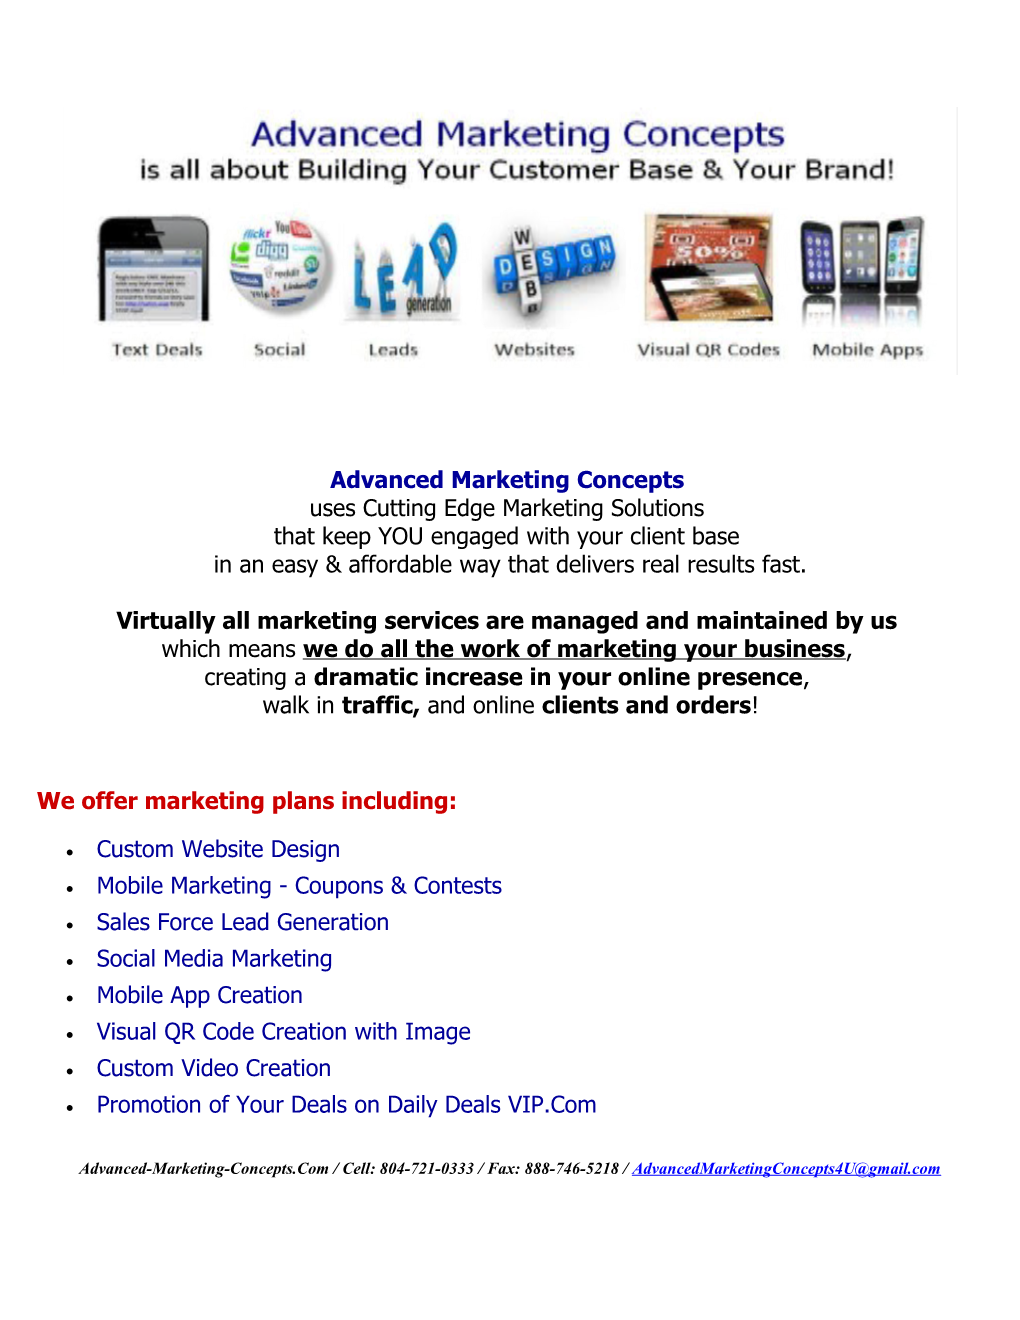 We Offer Marketing Plans Including